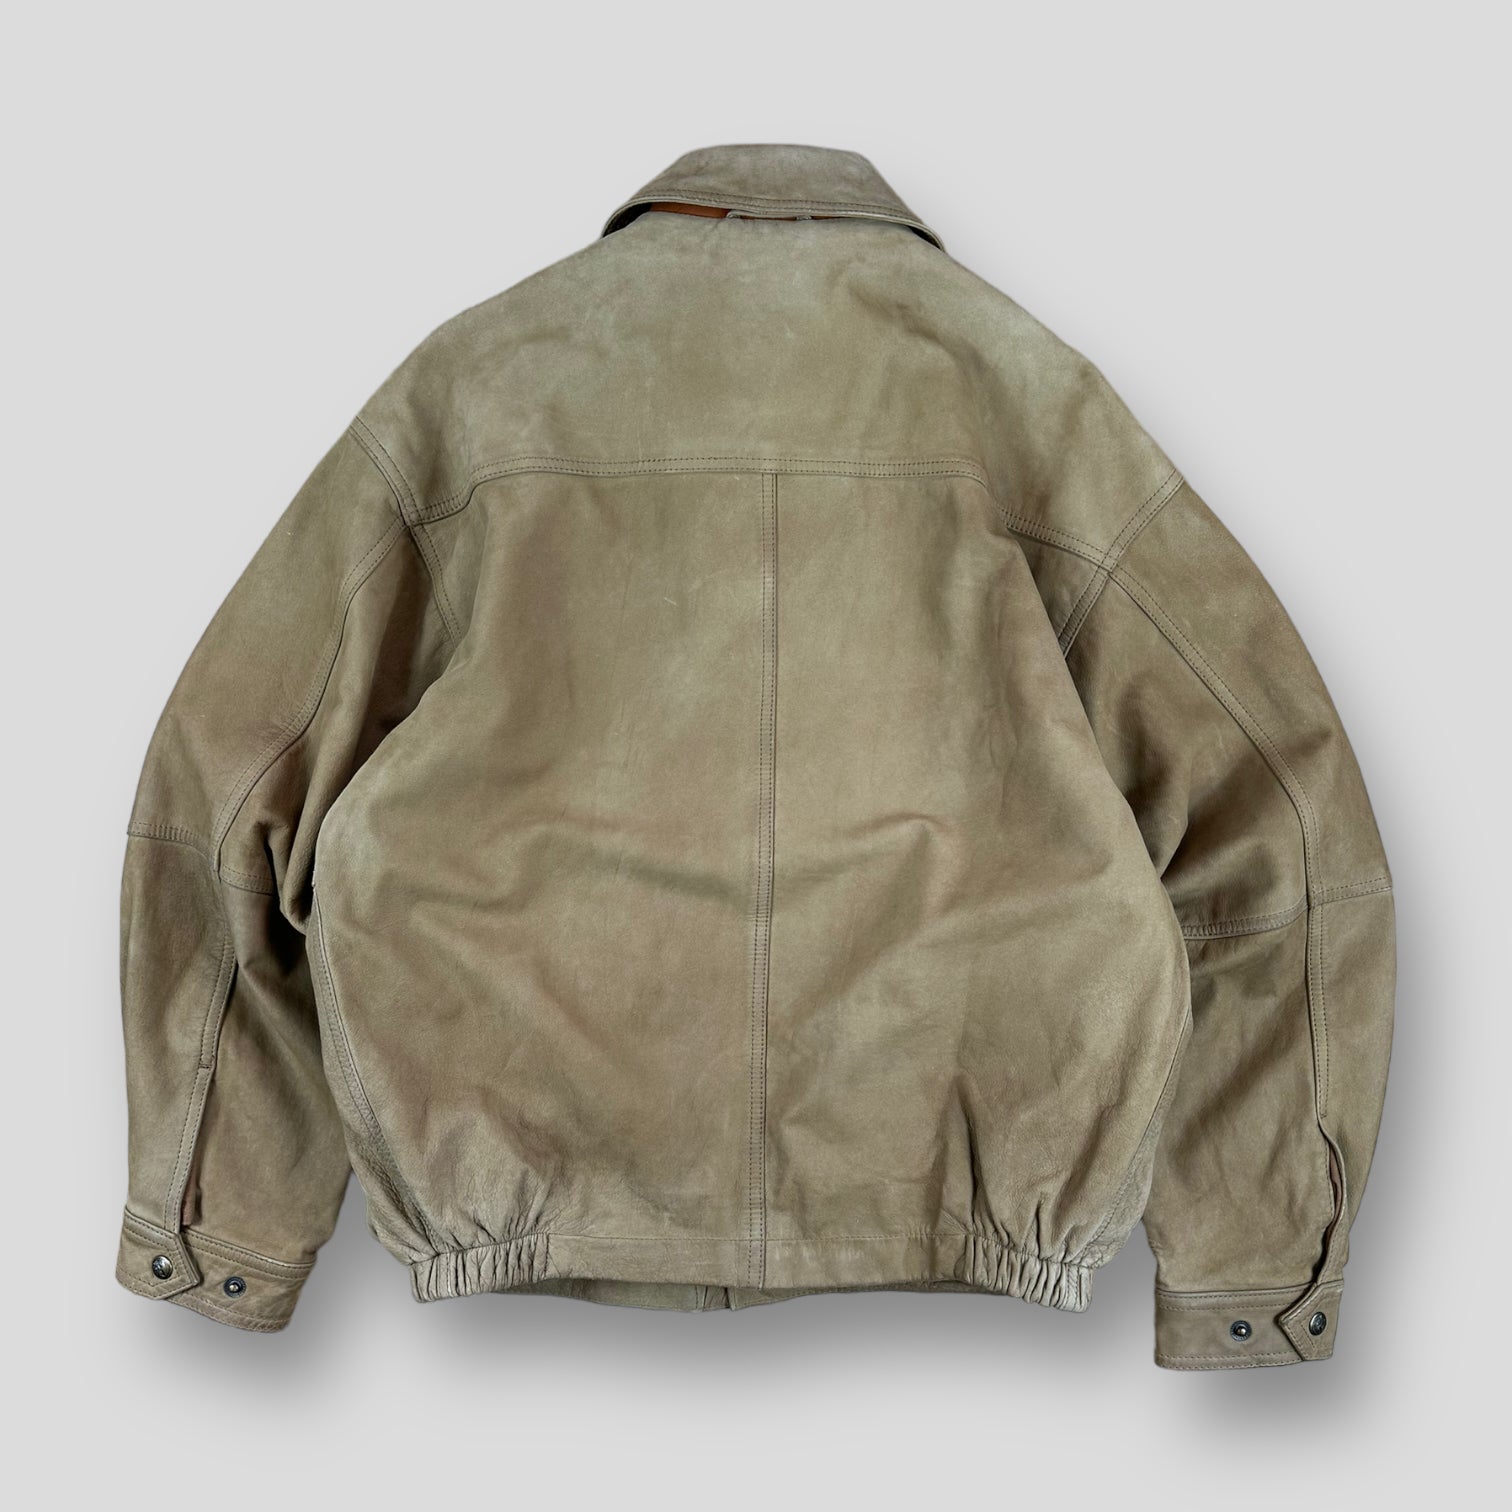 Timberland jacket